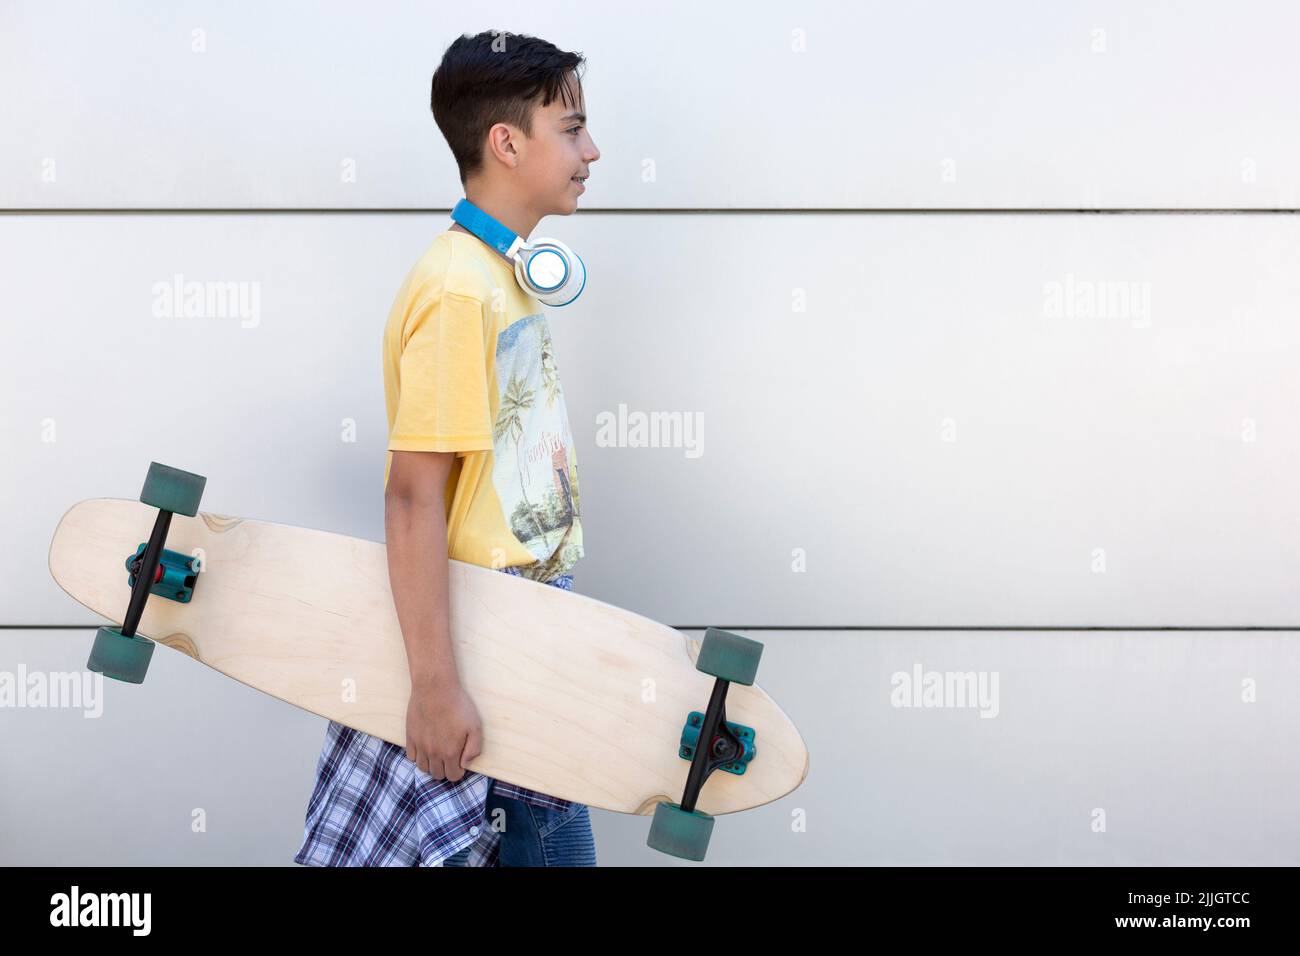 Jeune garçon caucasien souriant avec skateboard à la main. Il est isolé sur un mur. Style de vie urbain. Espace pour le texte. Banque D'Images